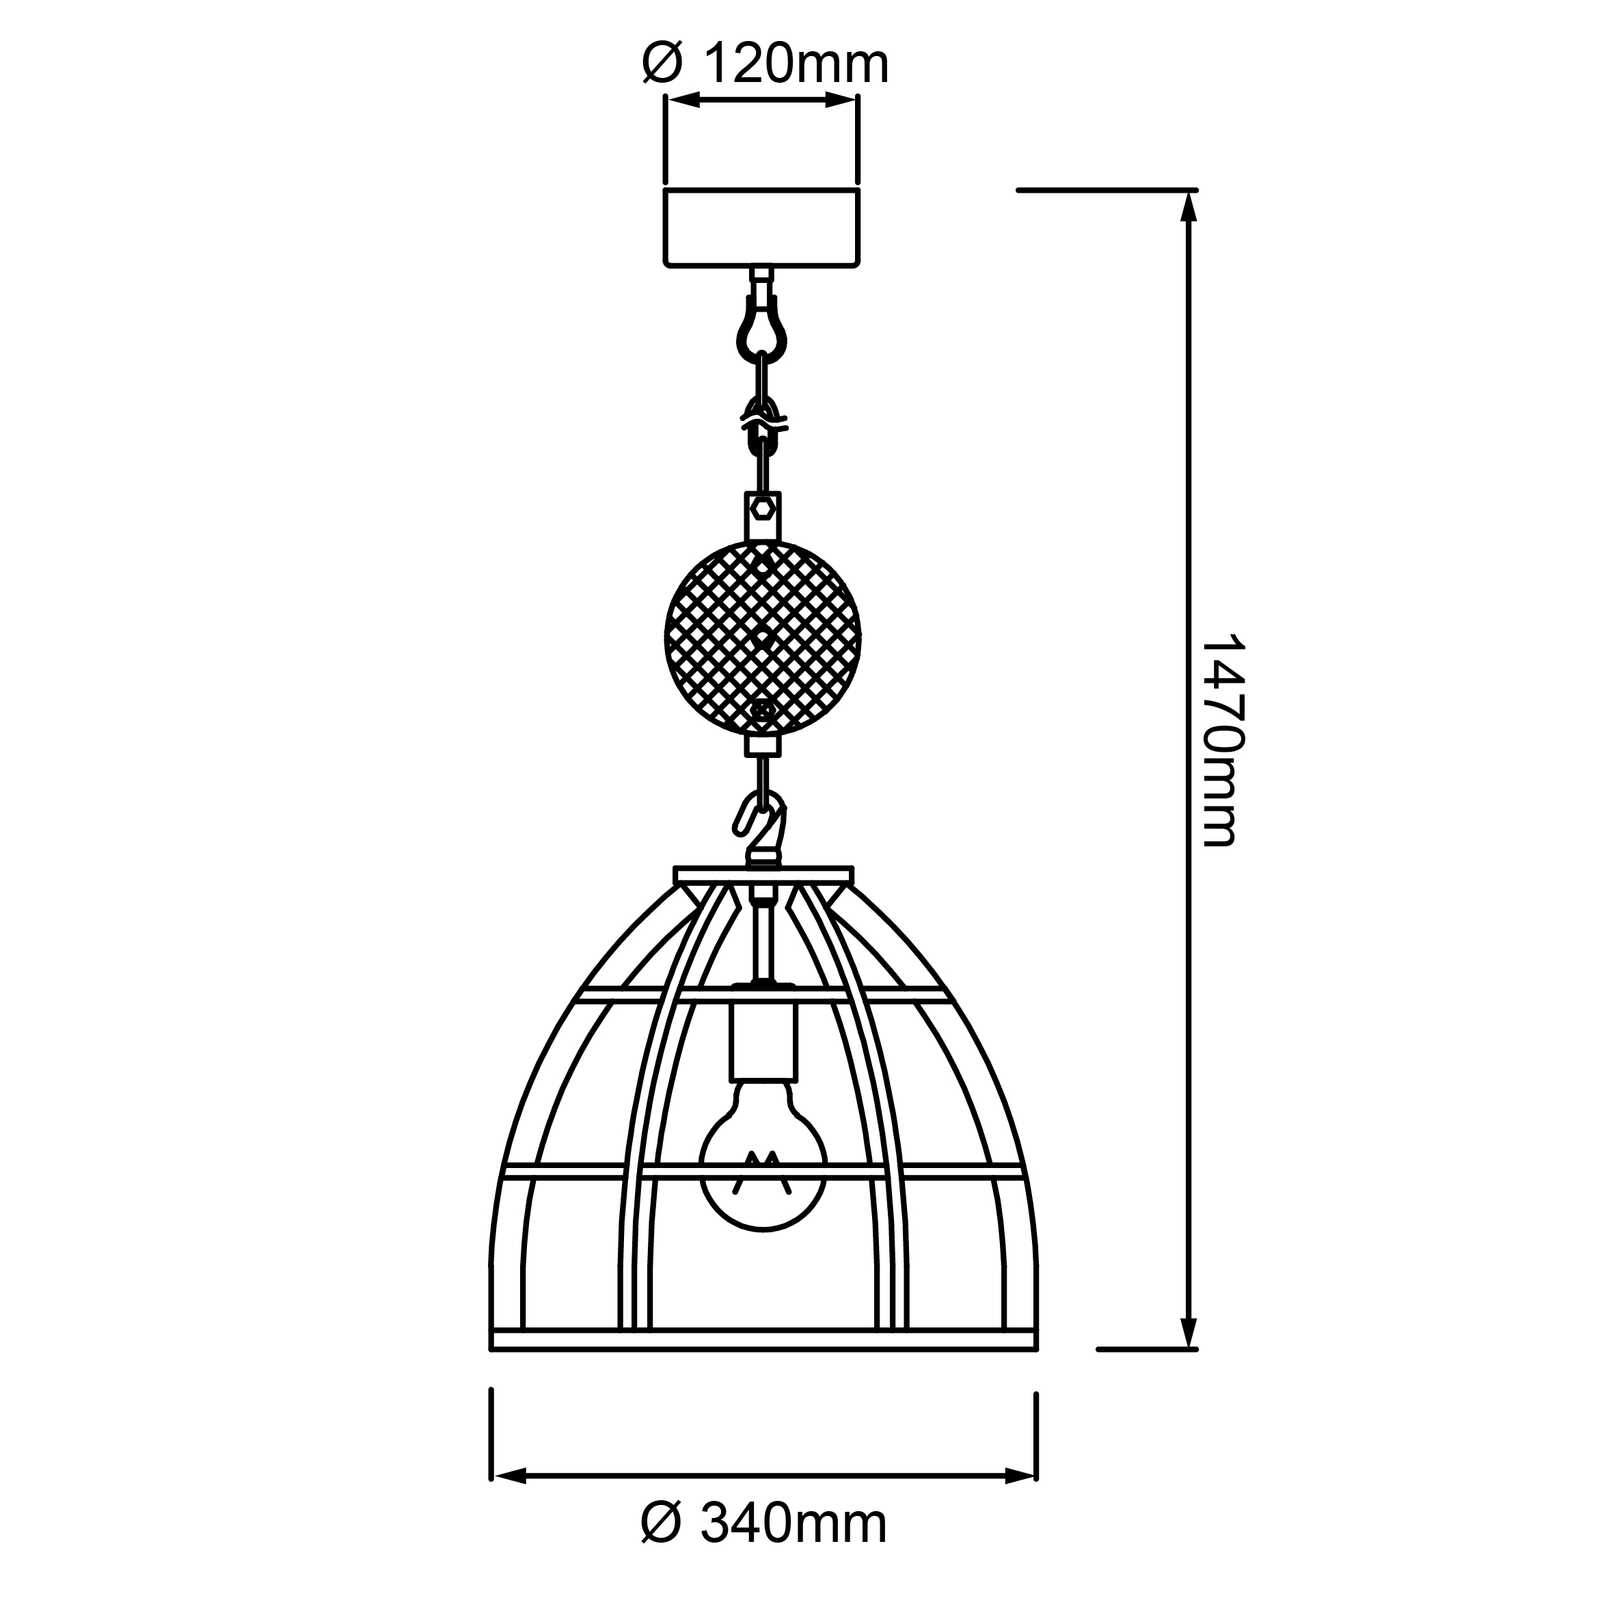             Houten hanglamp - Leonie 4 - Zwart
        